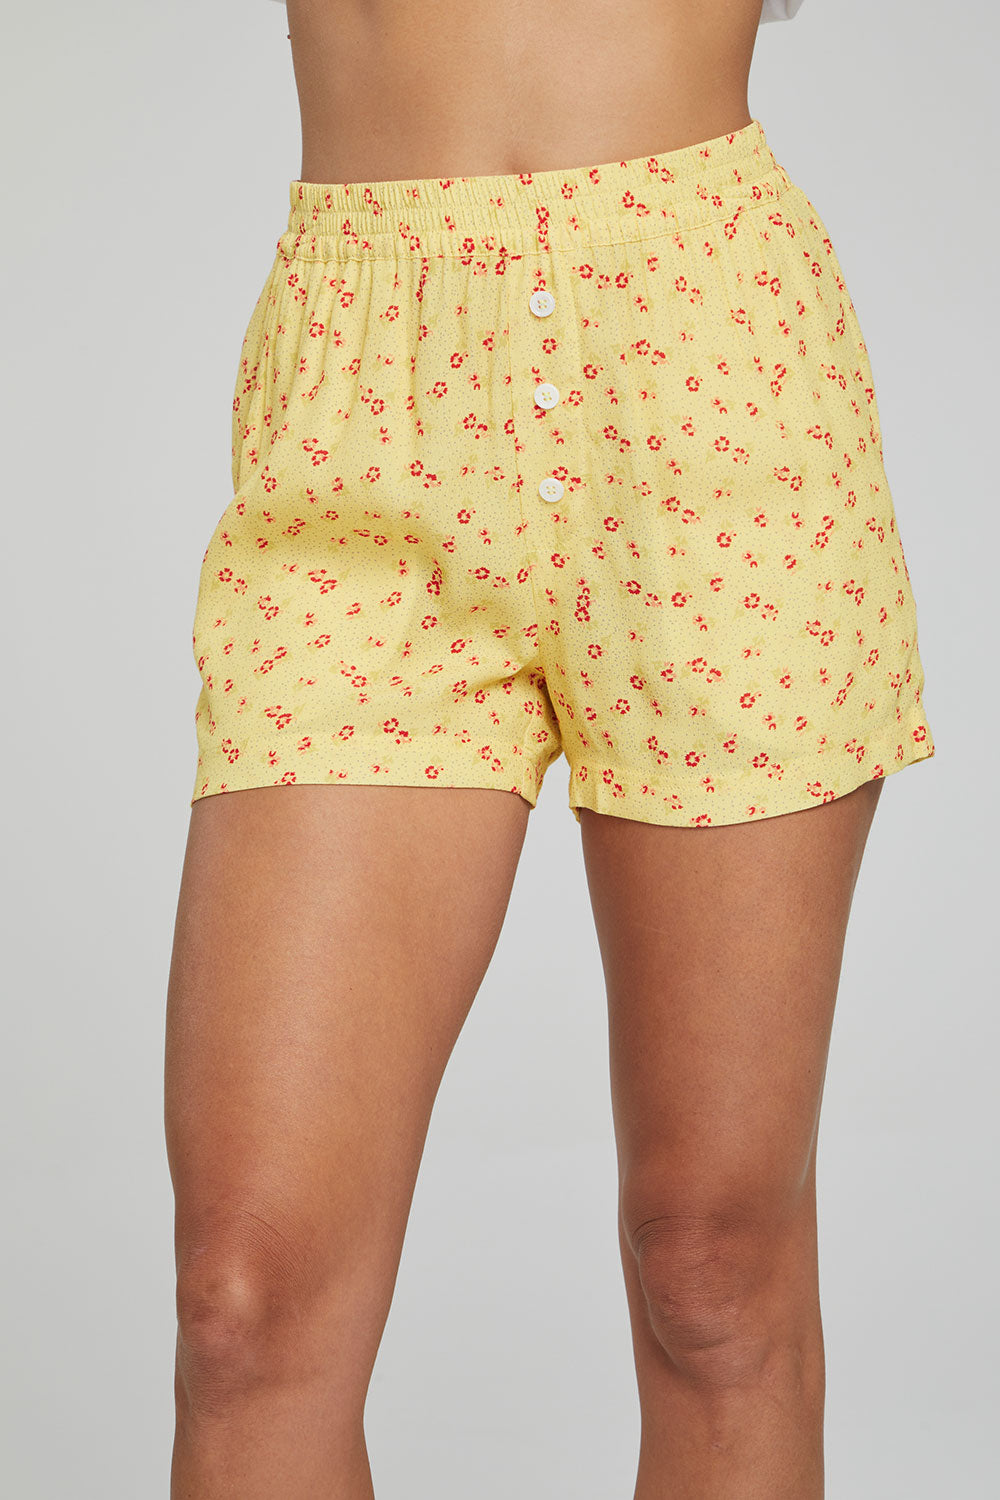 Ollie Boxer Shorts - Anise Flower Print